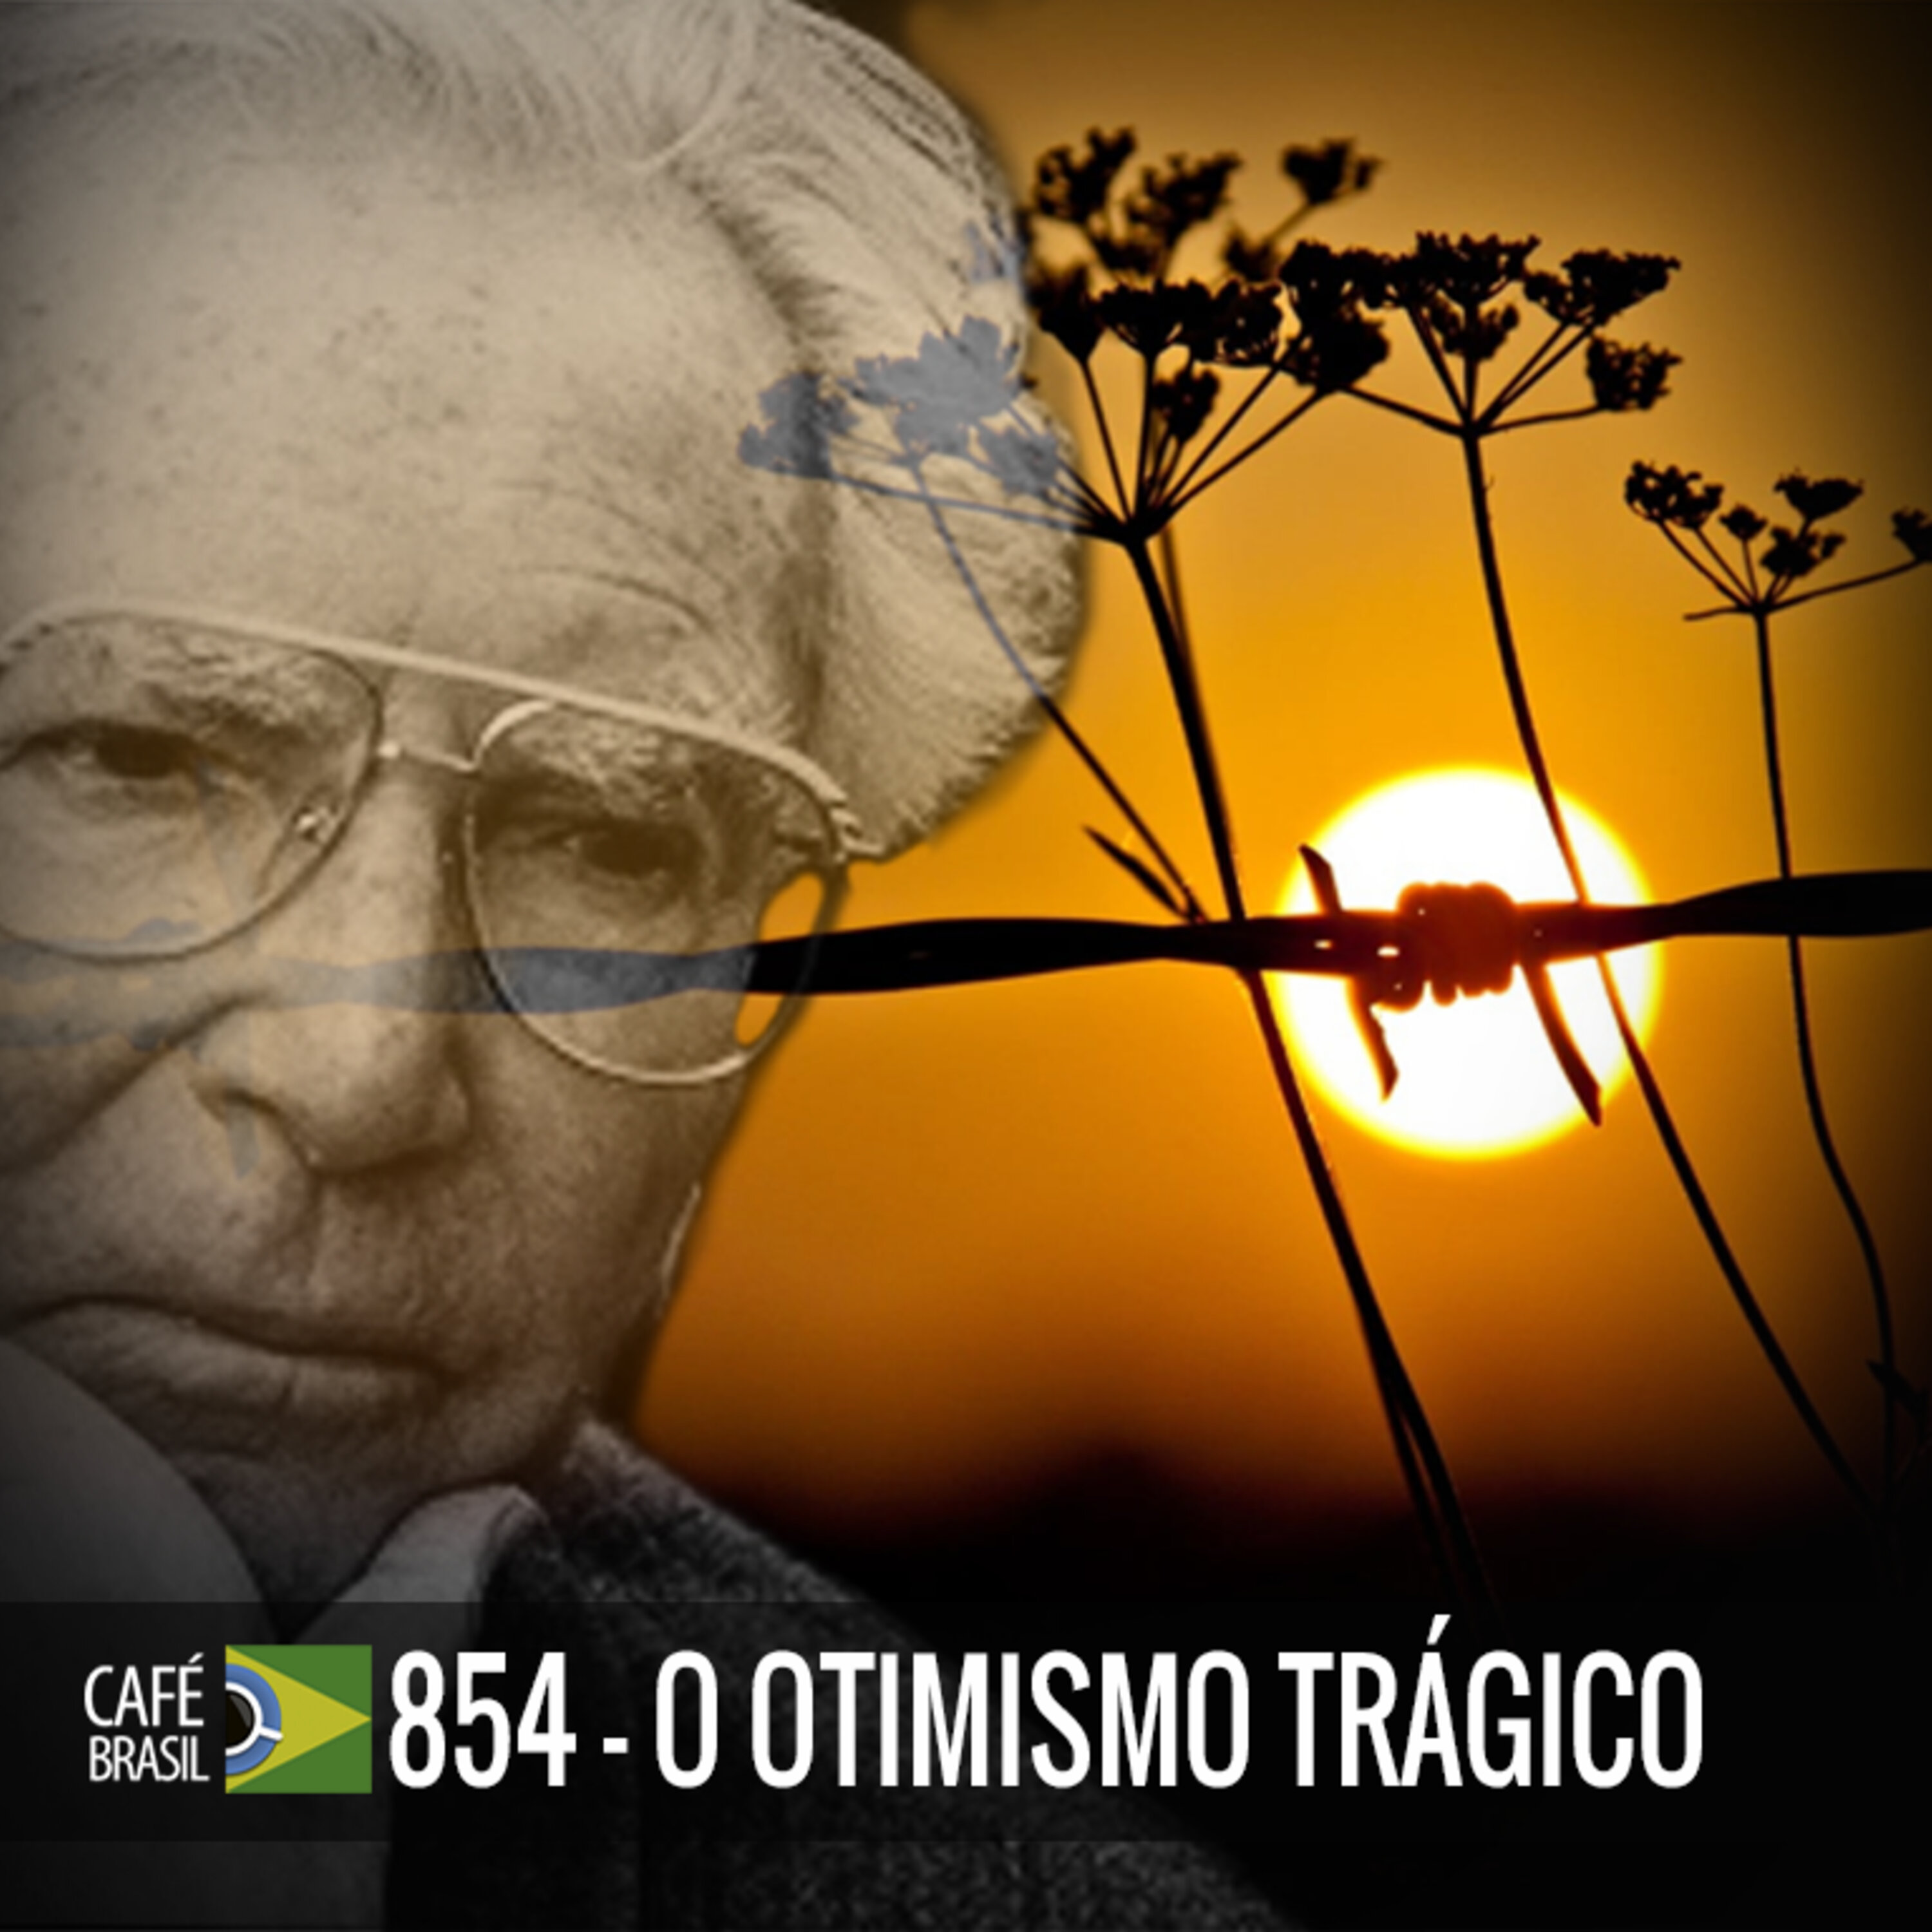 Cafe Brasil 854 - Otimismo Trágico